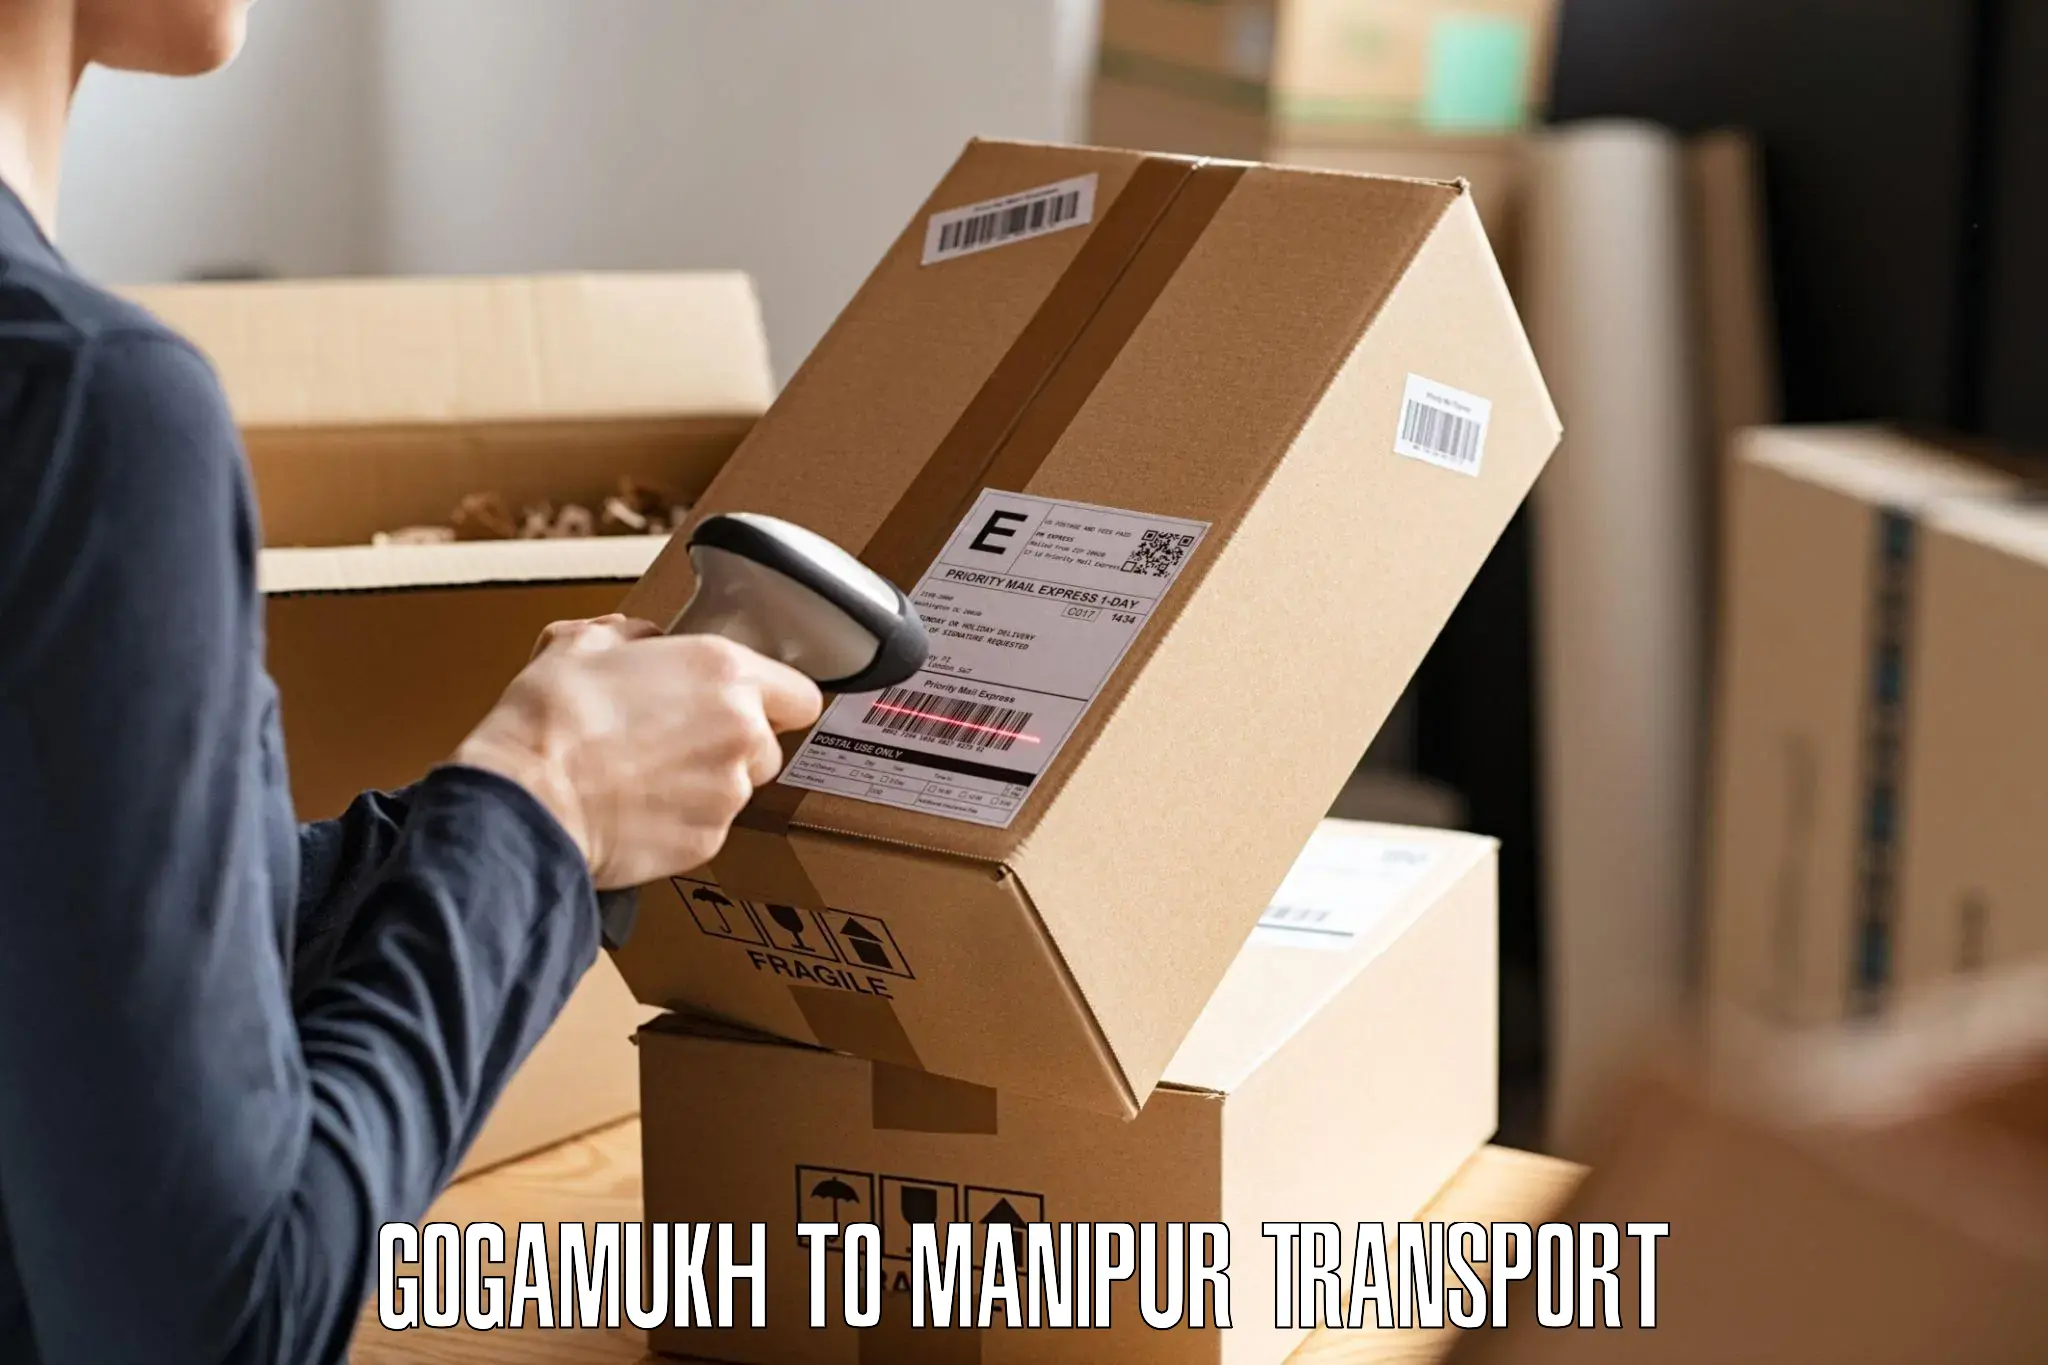 Scooty transport charges Gogamukh to Churachandpur